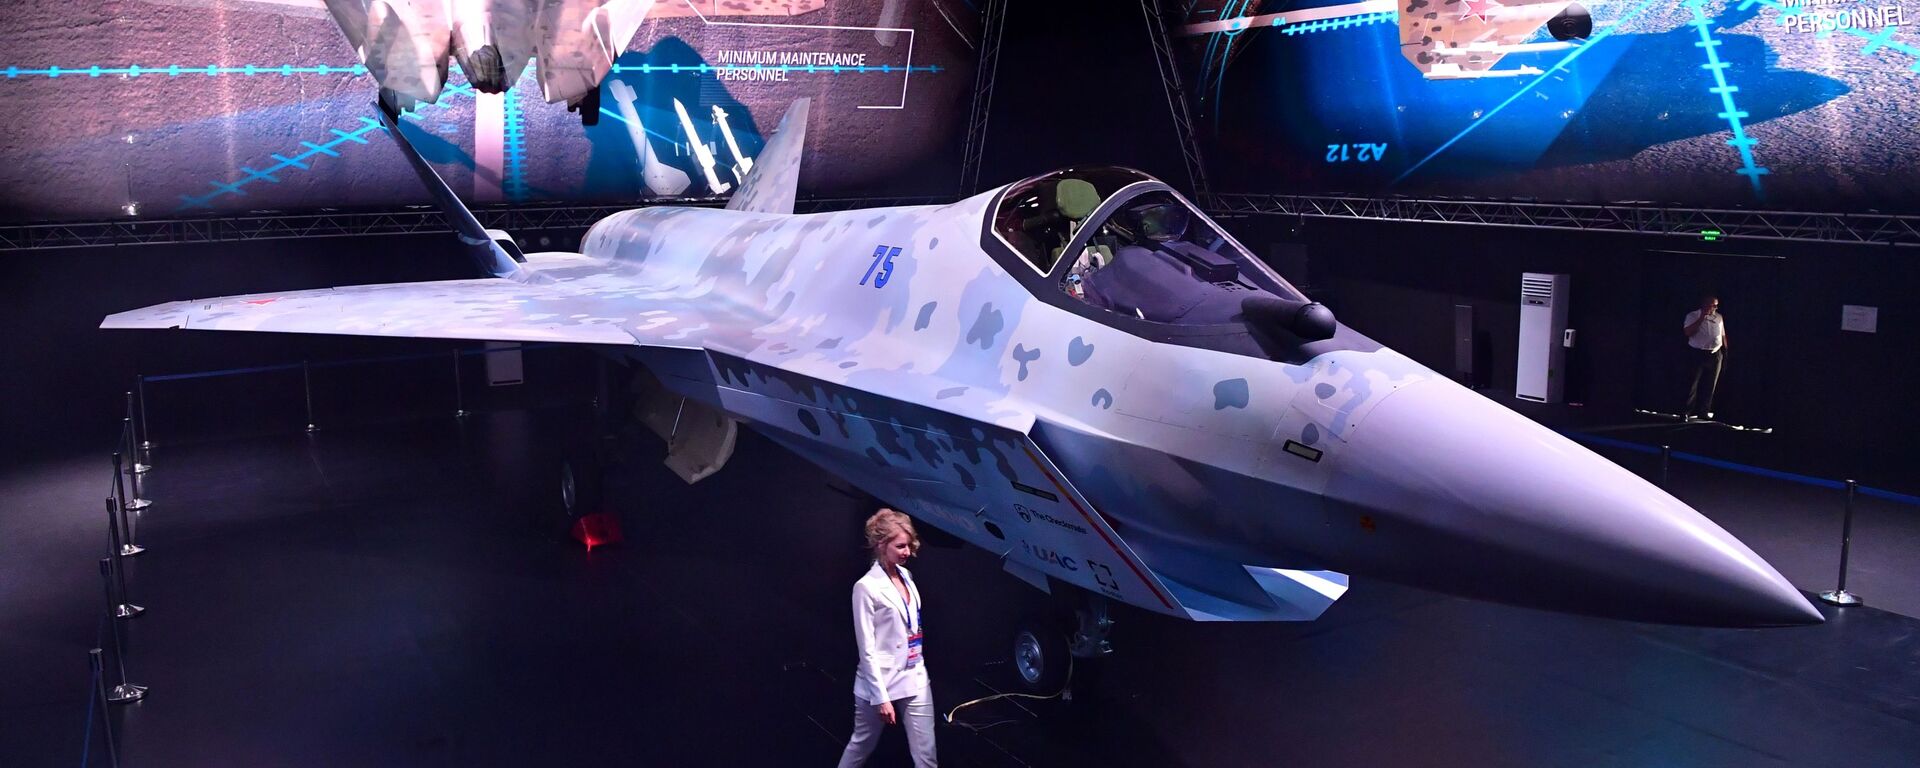 مقاتلة سوخوي تشيك ميت (كش ملك) في معرض الطيران والفضاء الدولي ماكس 2021 في جوكوفسكي، ضواحي موسكو، روسيا 20 يوليو 2021 - سبوتنيك عربي, 1920, 20.12.2021